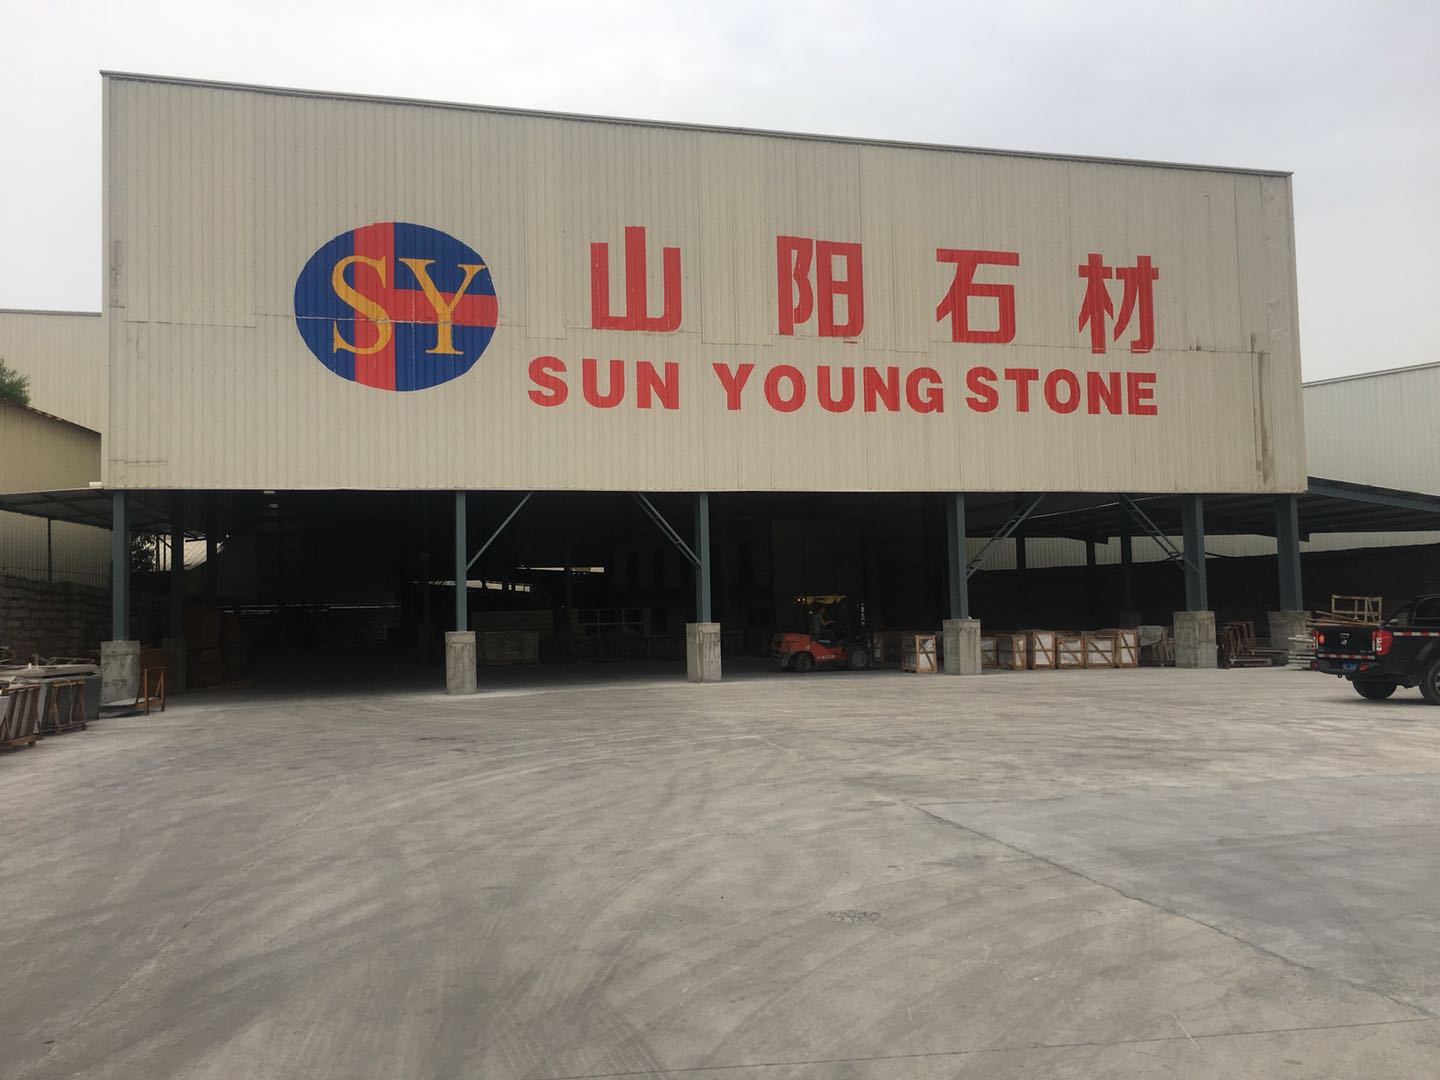 مصنع صن يونج